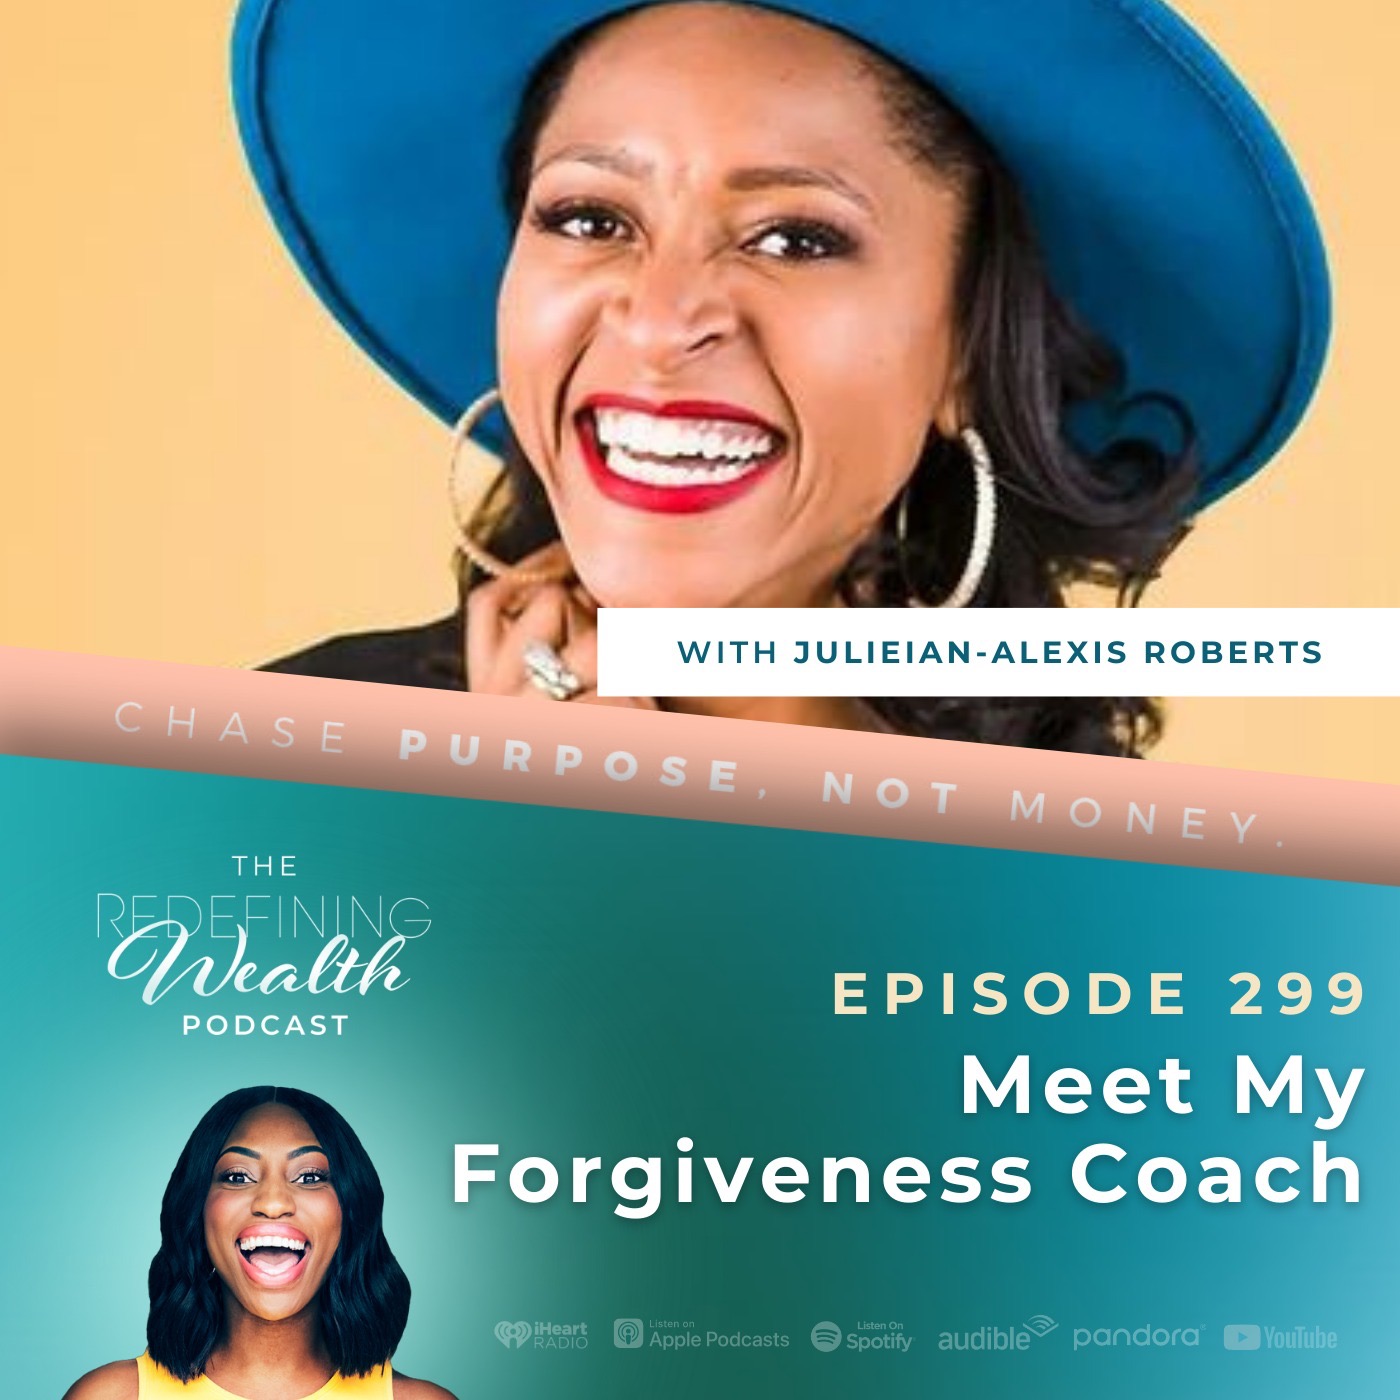 Julieian-Alexis Roberts: Meet My Forgiveness Coach